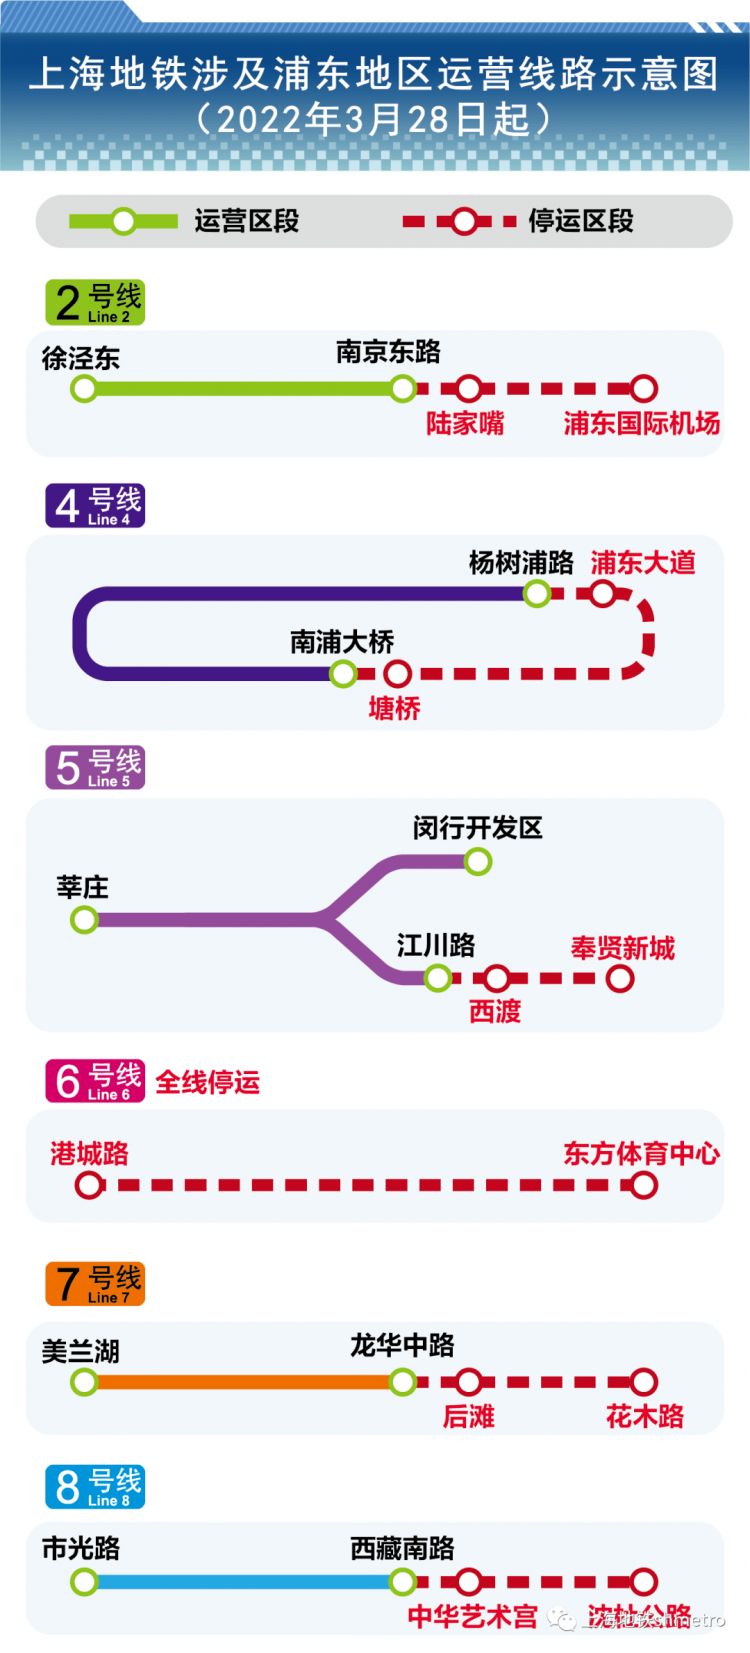 3月28日至31日，黄浦江以东、以南区域的上海地铁所有车站暂停运营